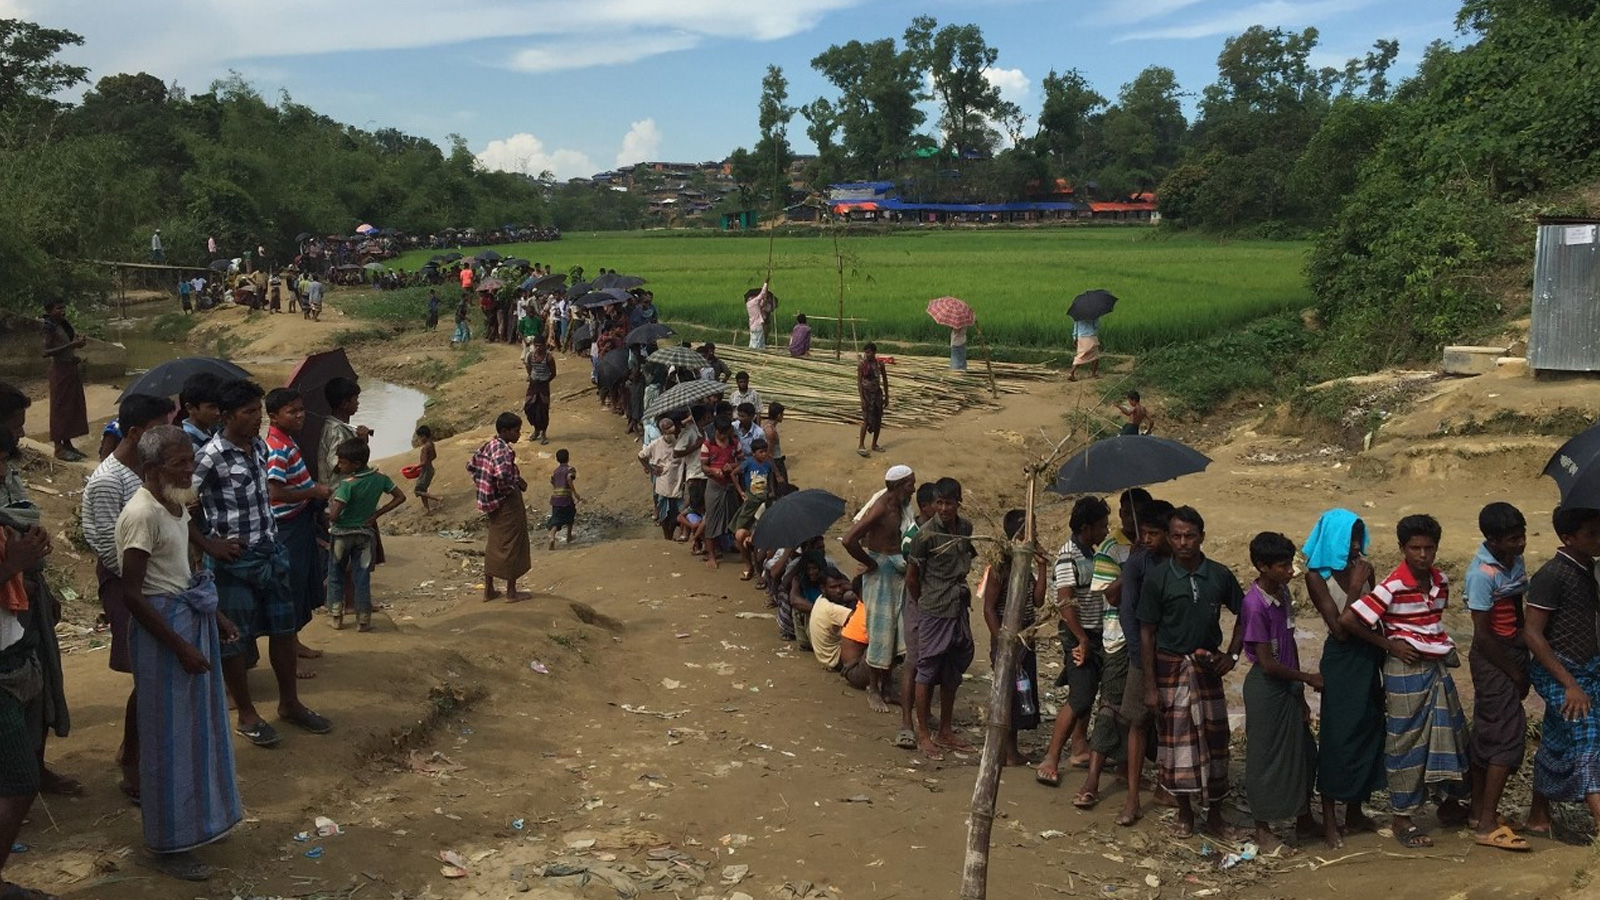 من الصعب جدا على دولة مثل بنغلاديش أن تؤوي اللاجئين وتواصل تقديم المساعدات الإنسانية إليهم إلى أمد بعيد، فإنها بلد لا يستطيع أن يتحمل نفقات شعبها أحيانا